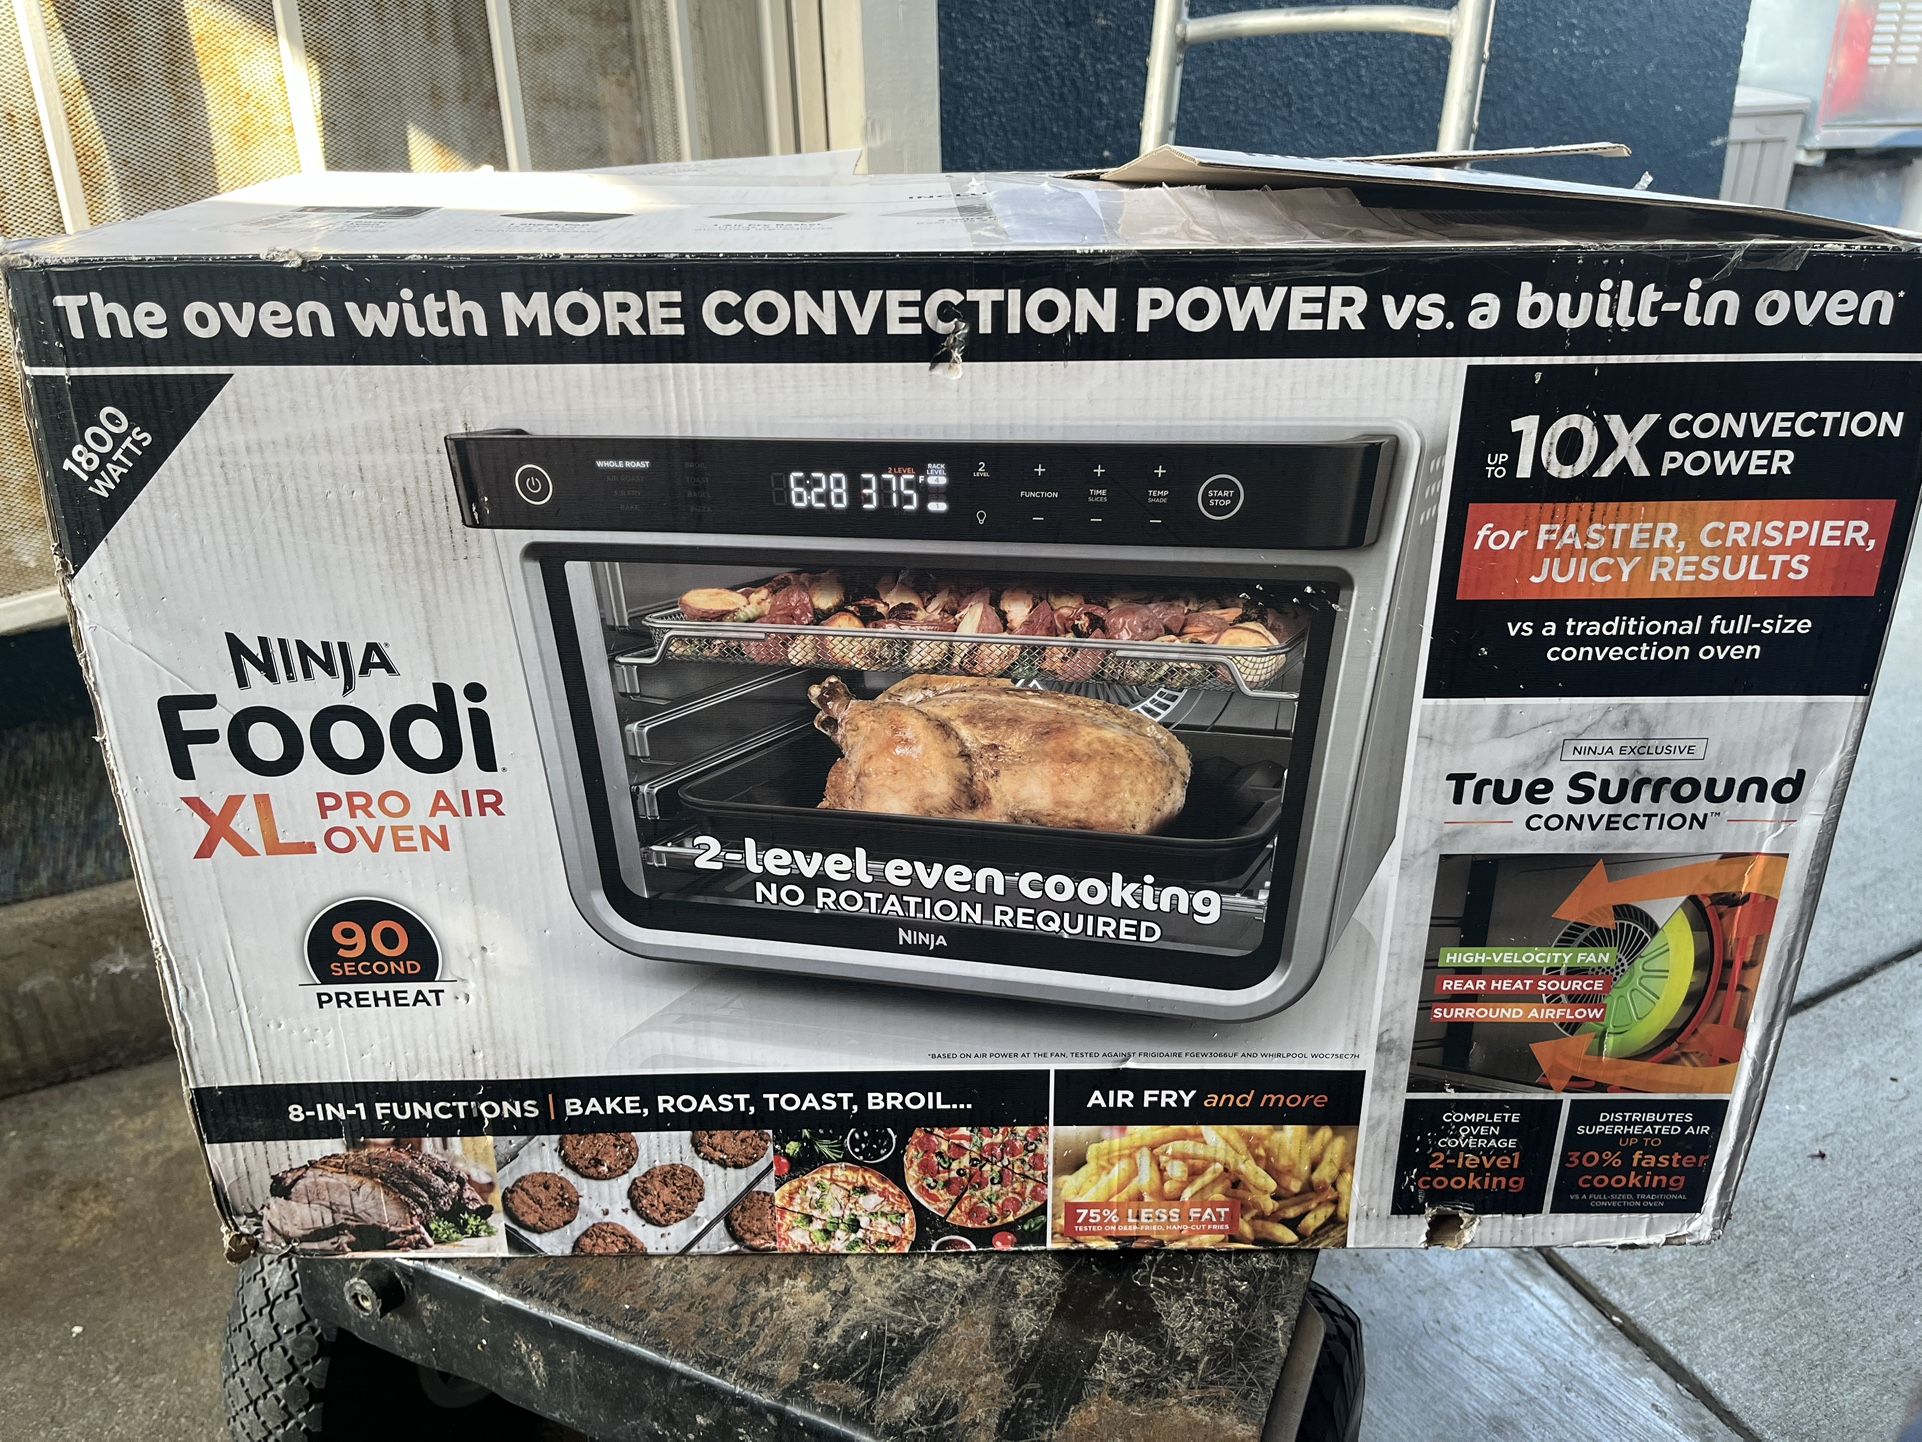 Ninja Foodi Xl Pro Air Oven 